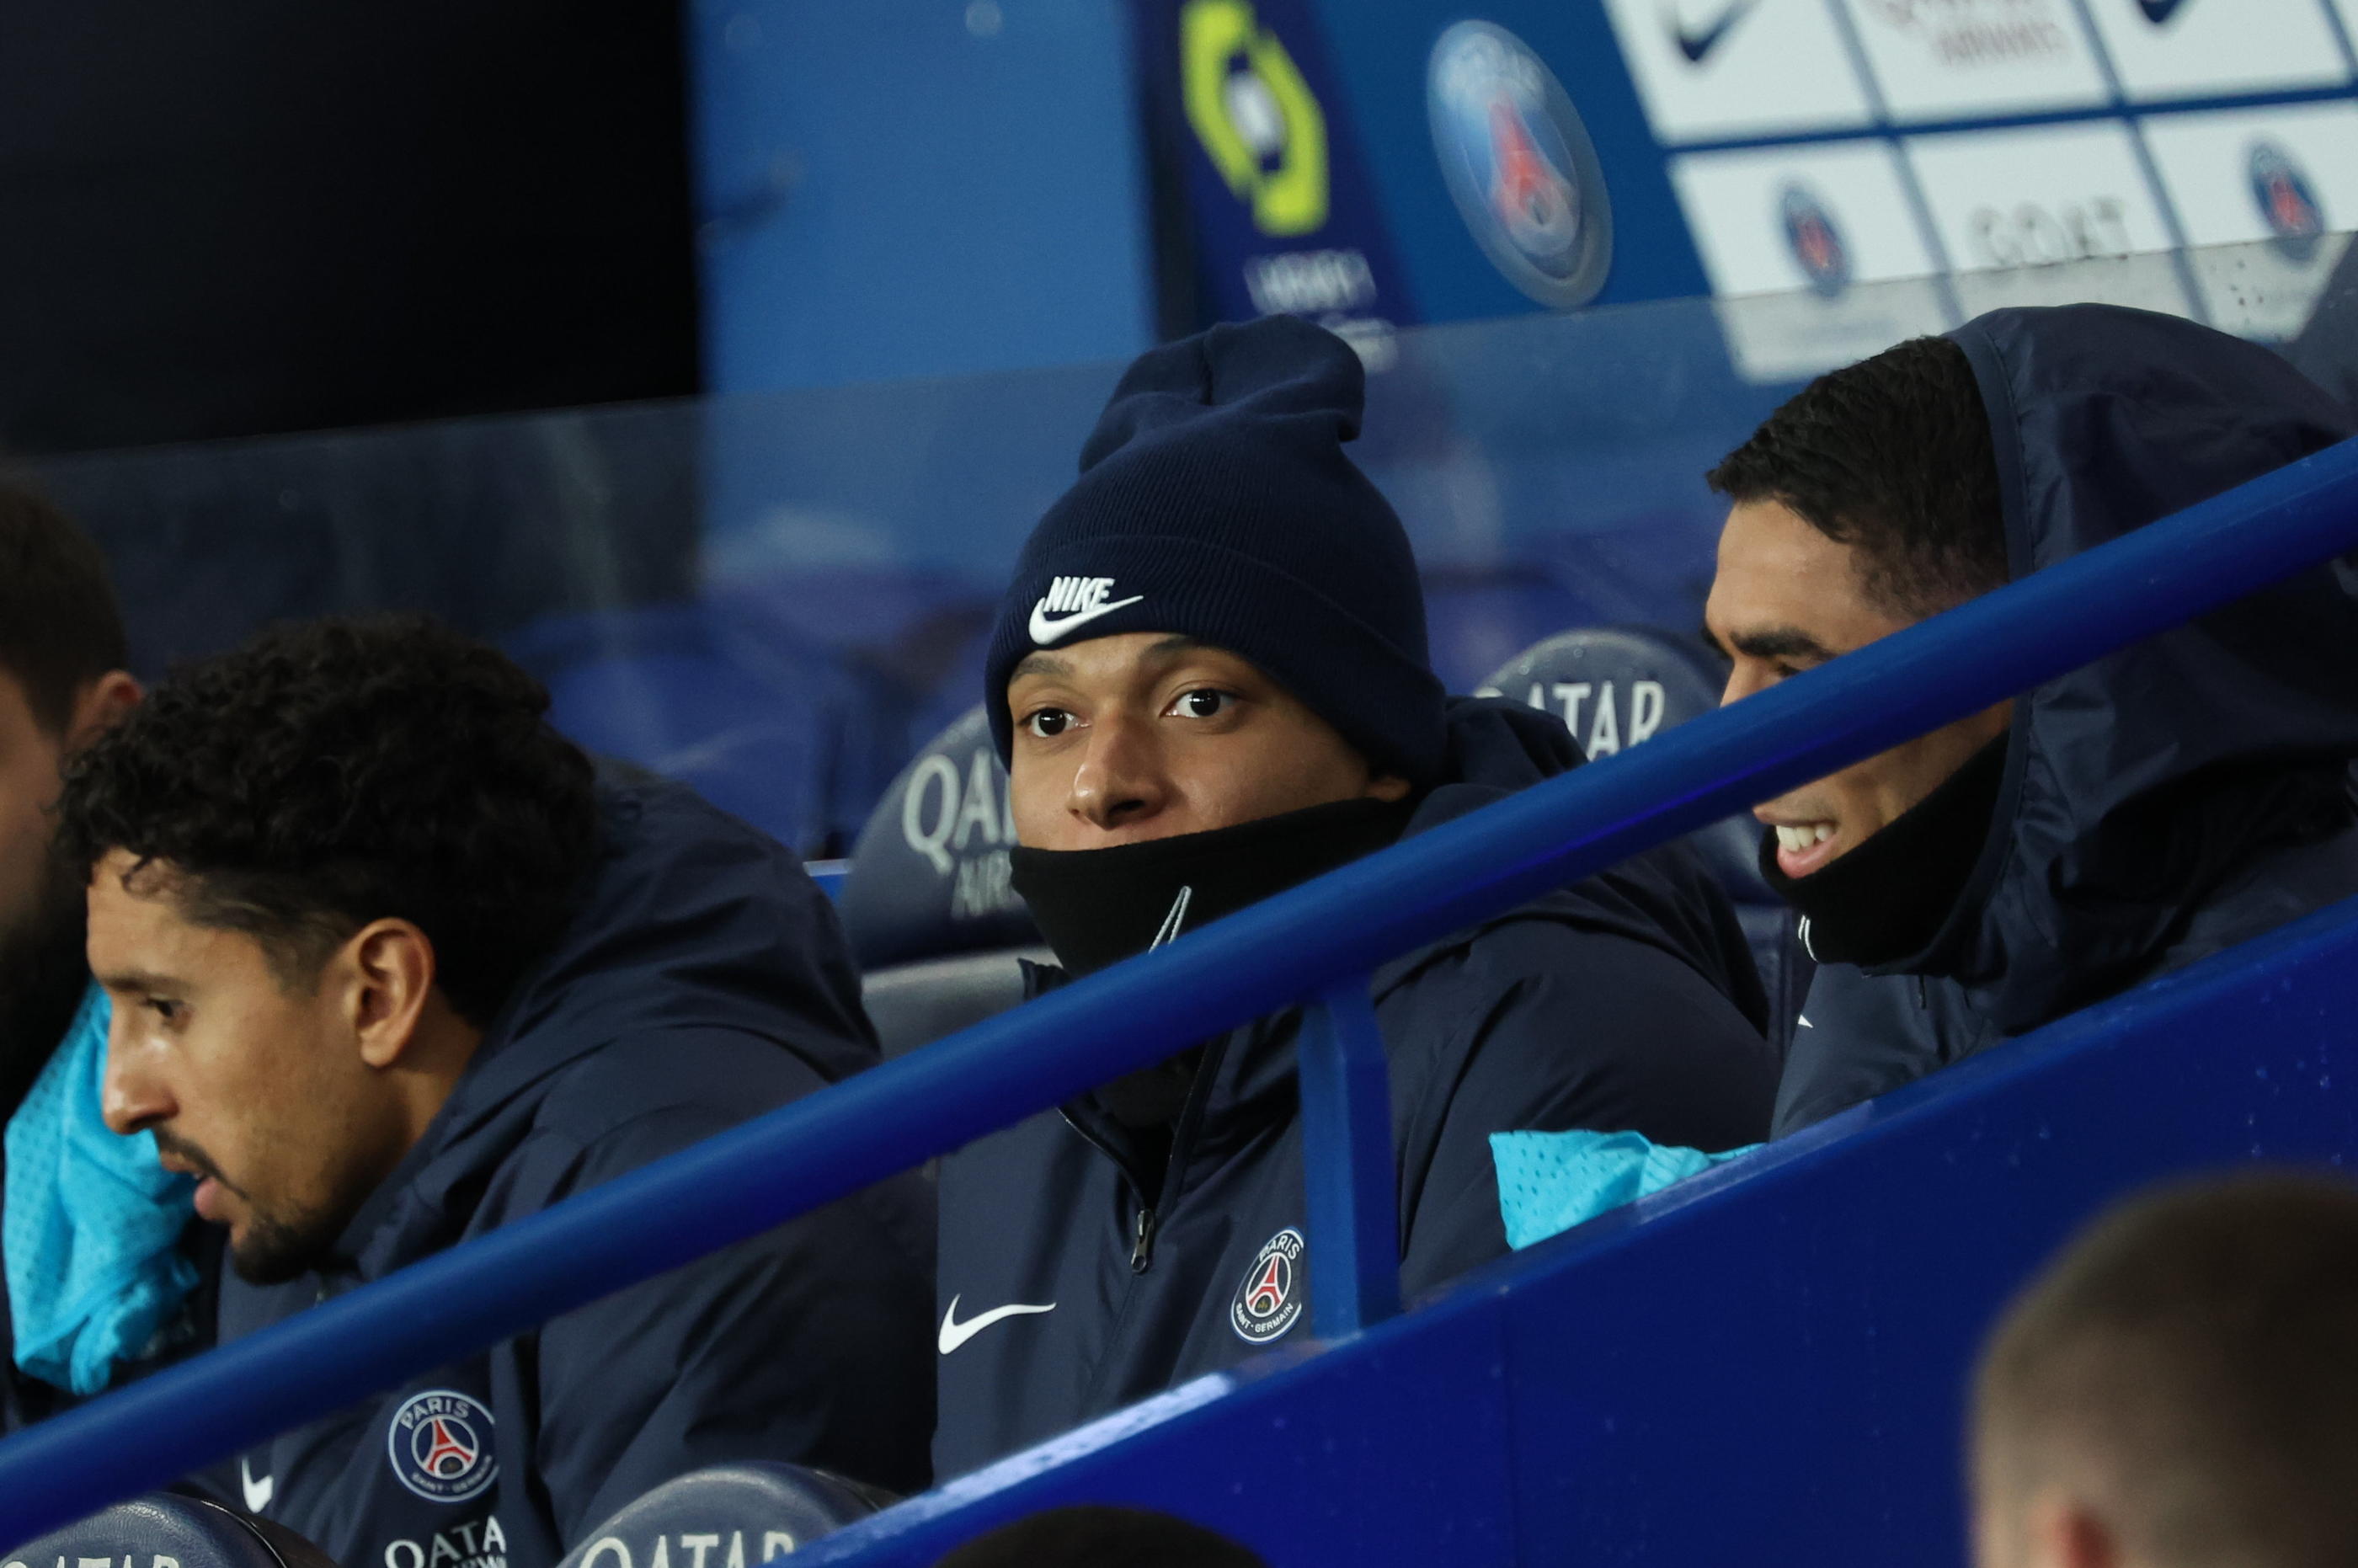 Kylian Mbappé en tribune entre Marquinhos et Hakimi lors de PSG-Lille en février dernier. LP/Arnaud Journois